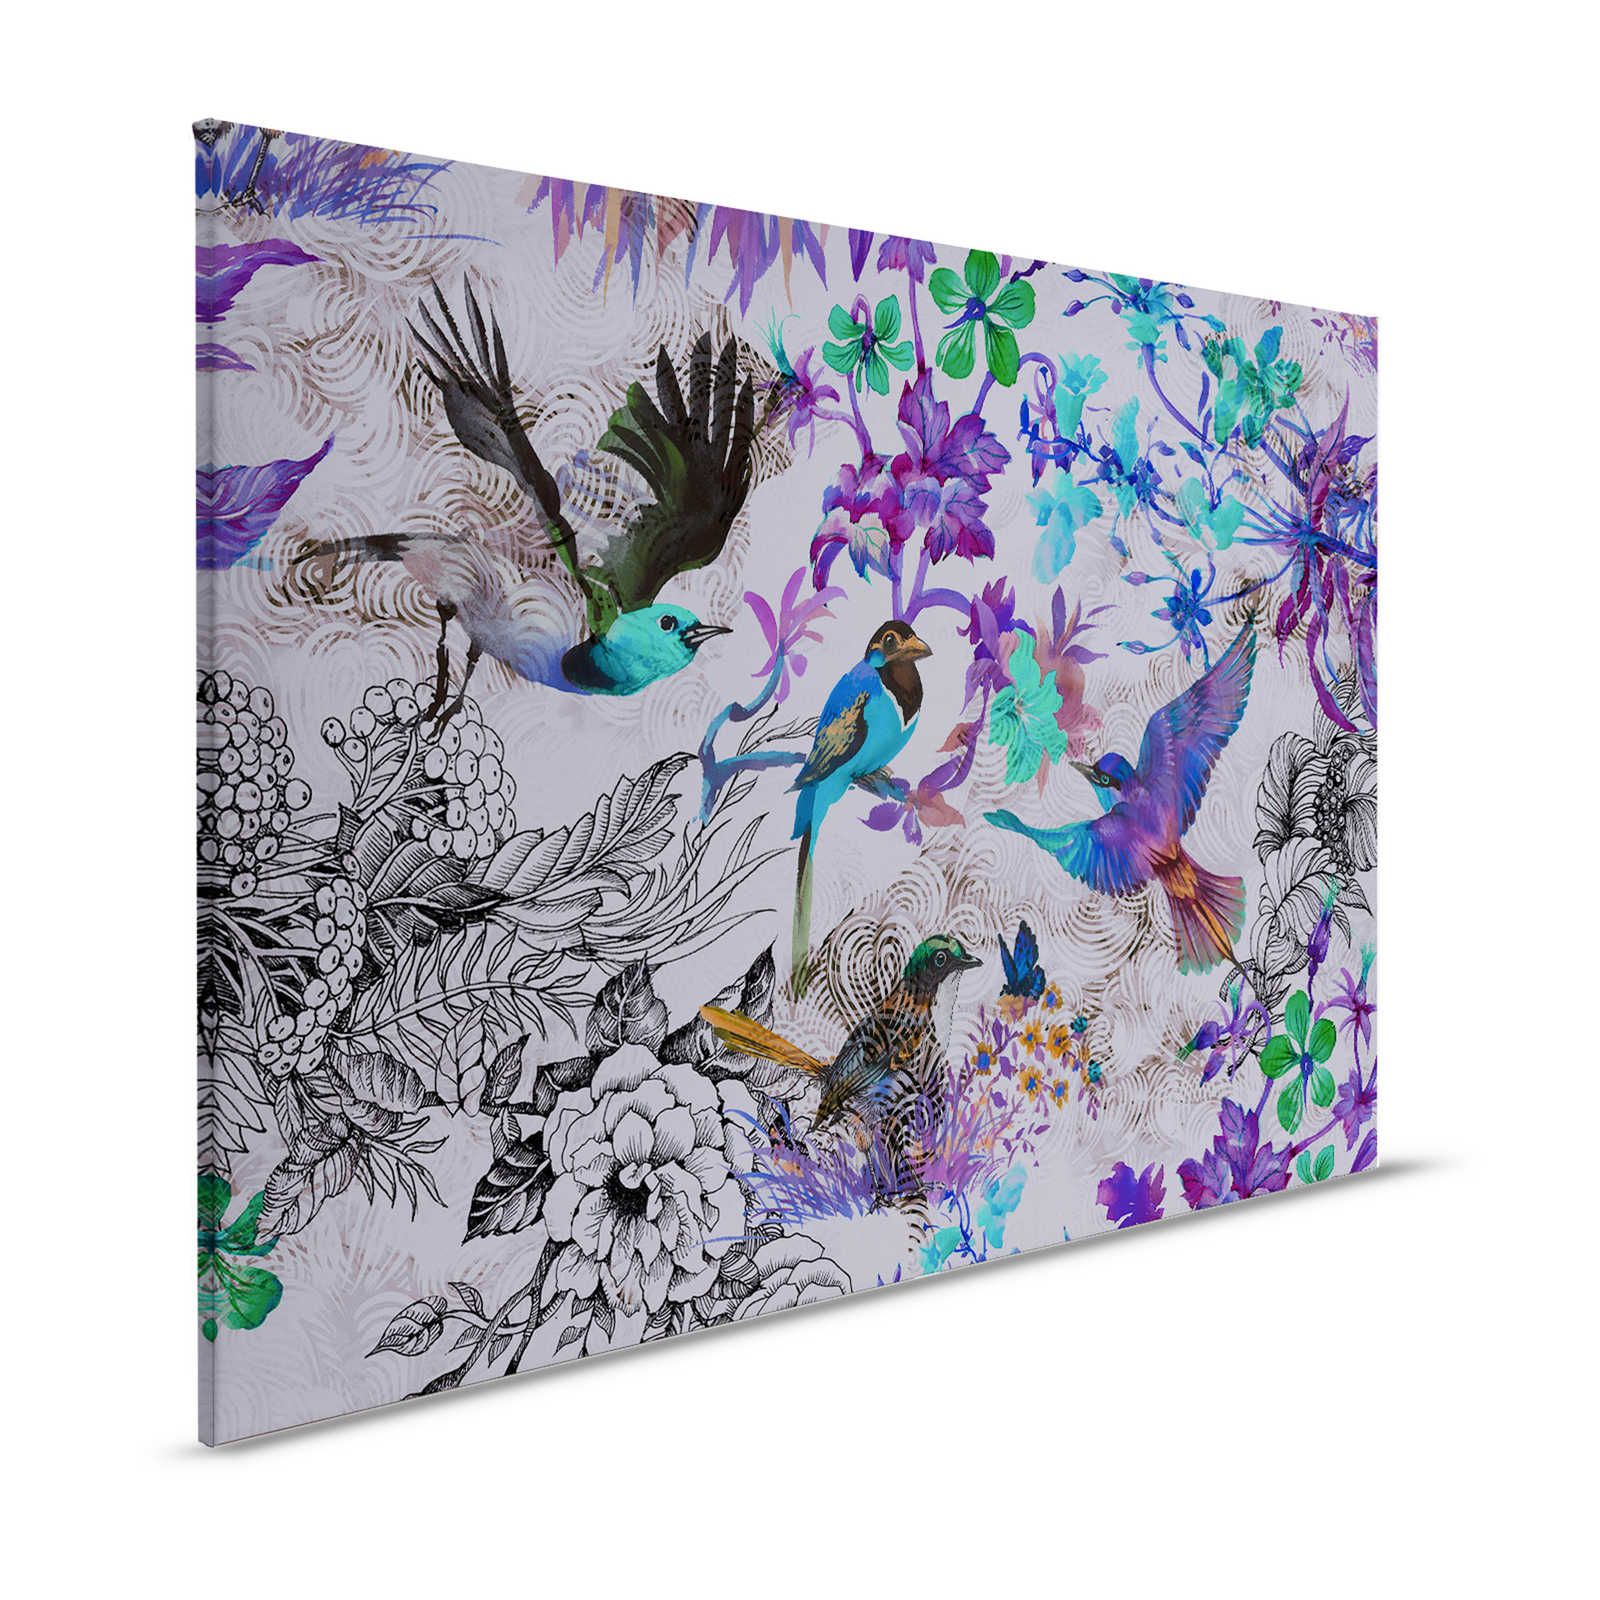 Toile violette avec fleurs & oiseaux - 1,20 m x 0,80 m
